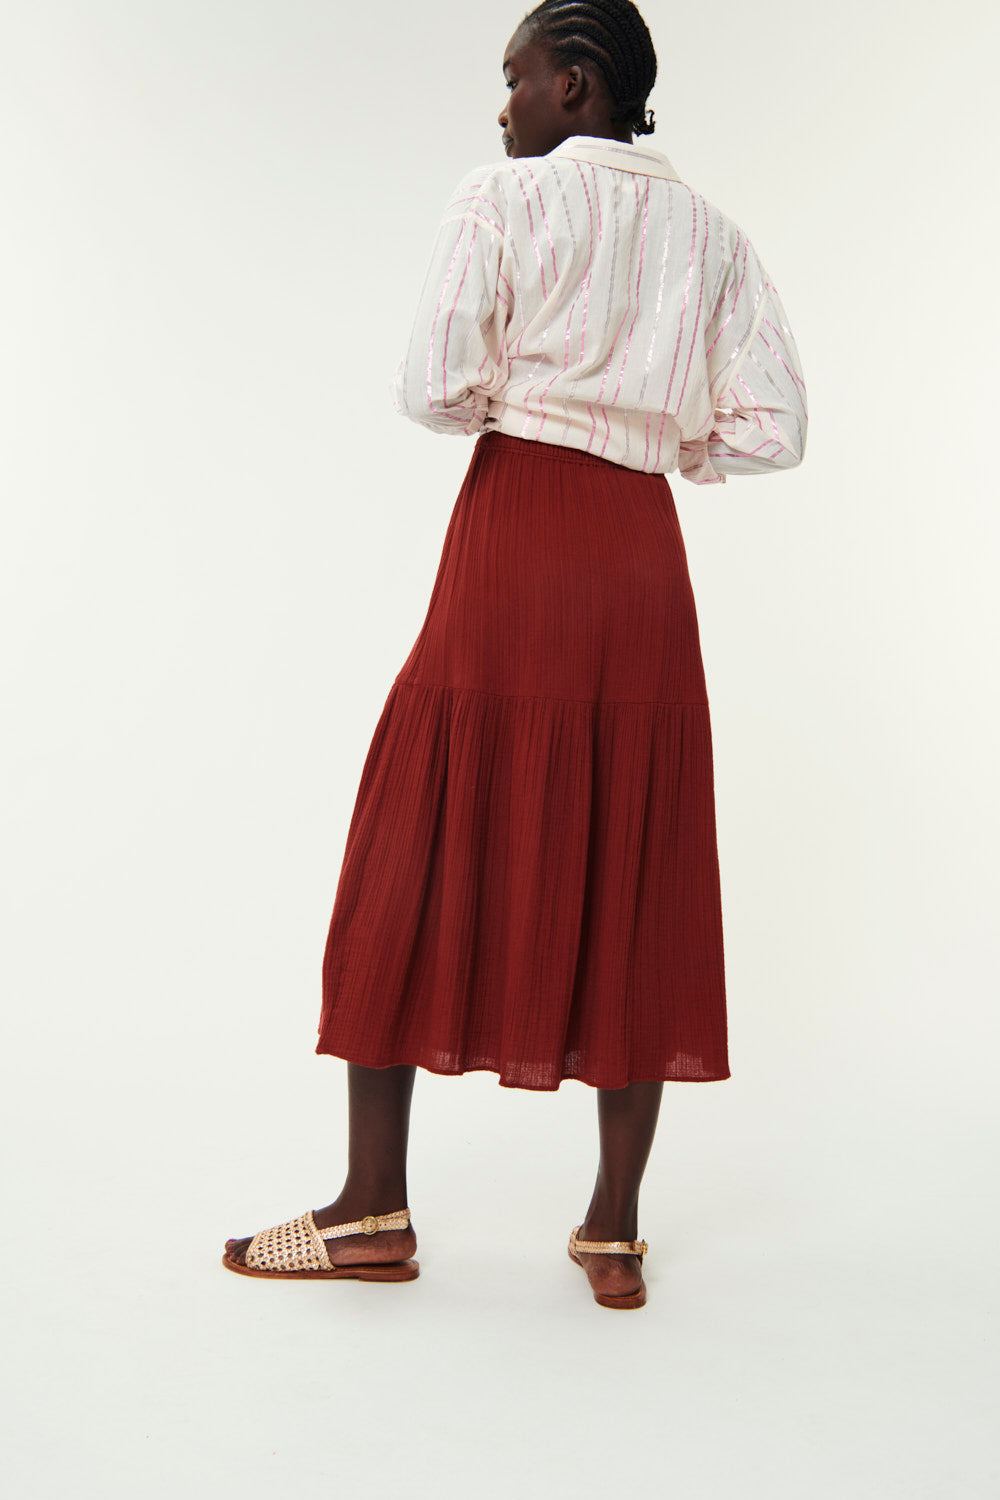 Rosanne Pecan Skirt